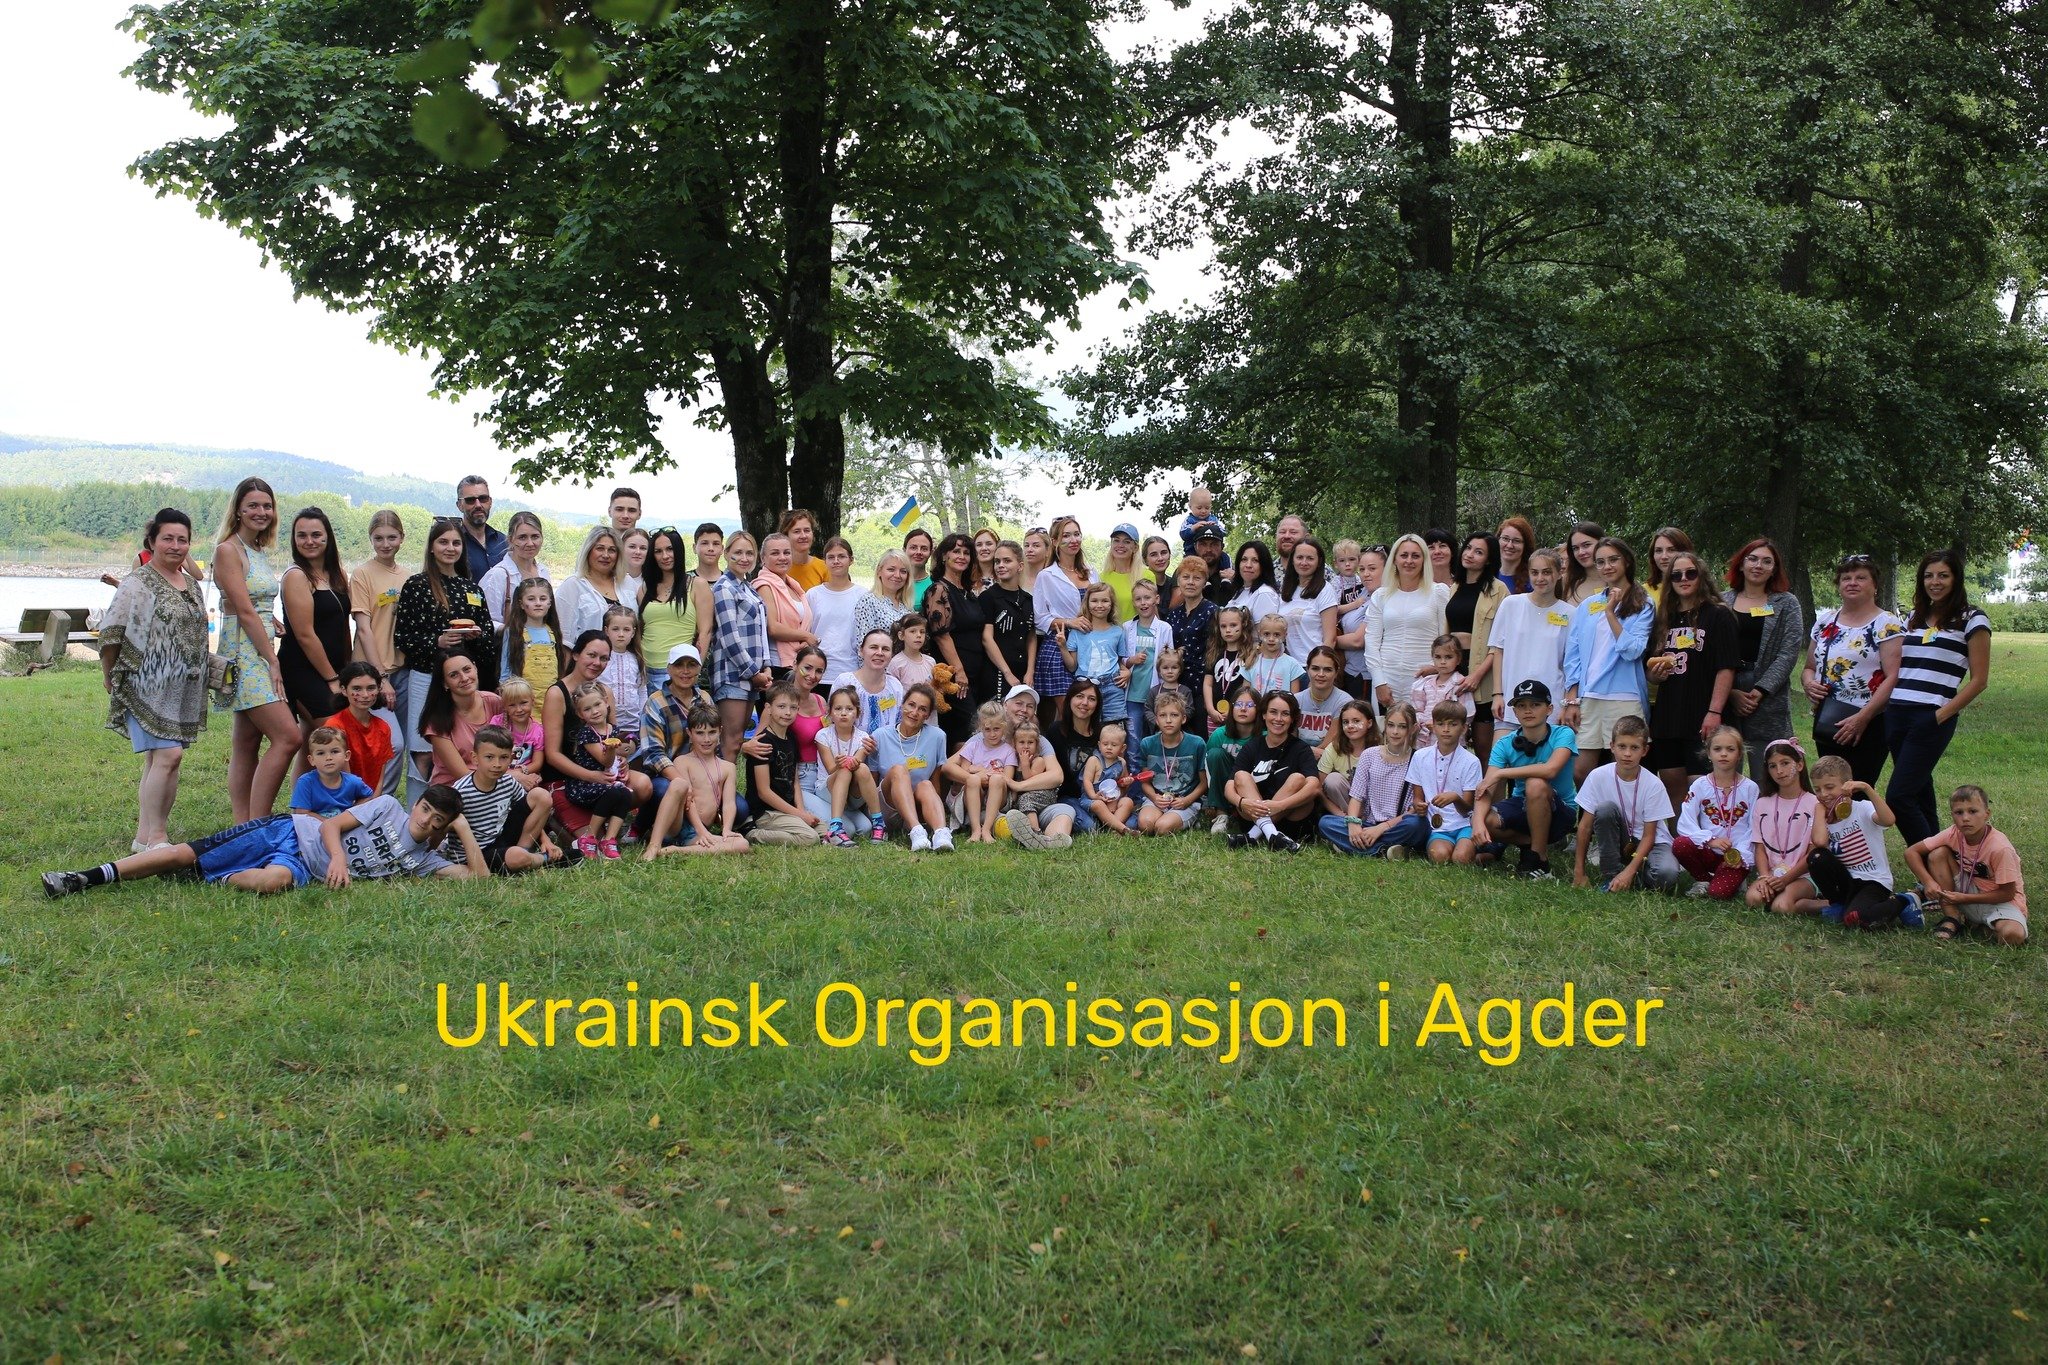 Ukrainian organization in Agder